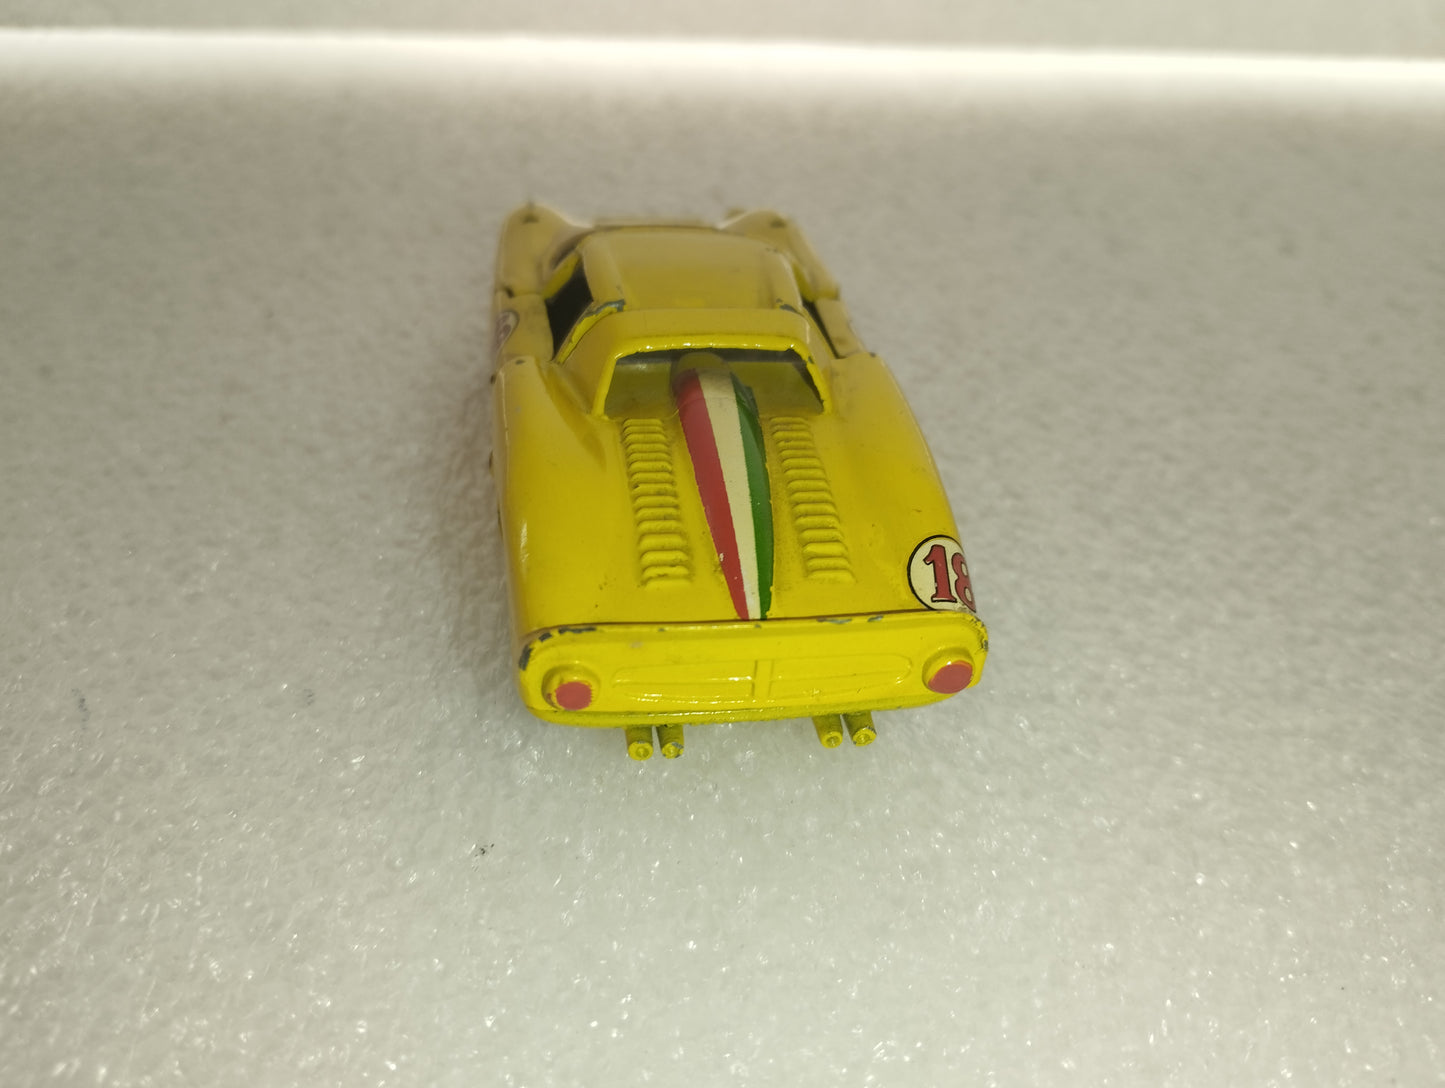 Ferrari 330 P2 Mercury
Scala 1:43